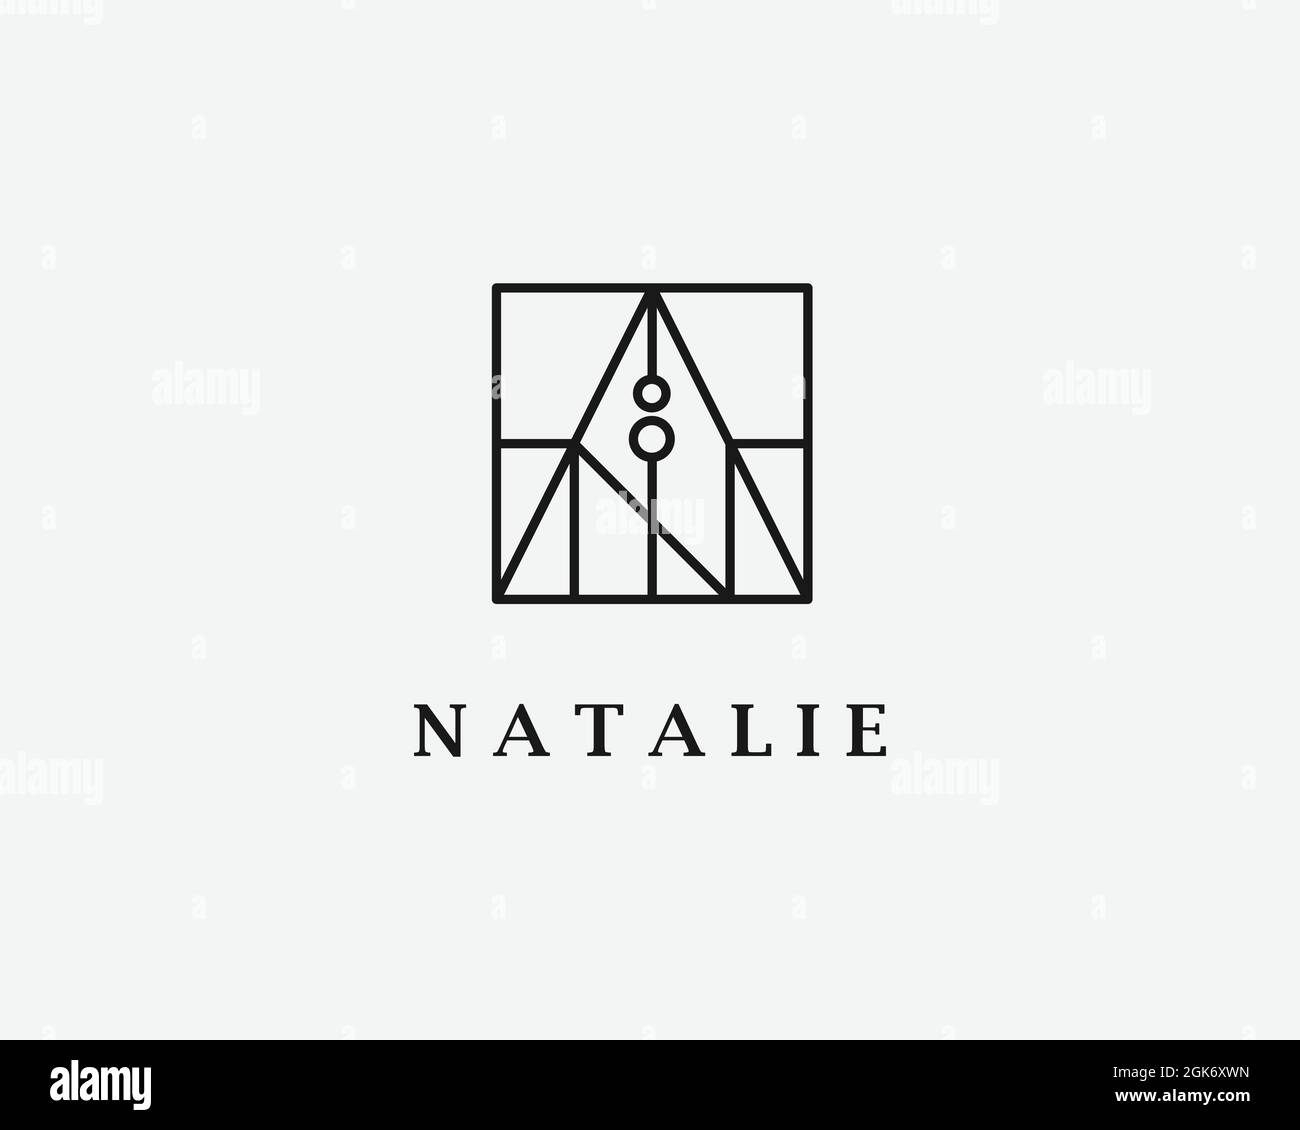 logo name Natalie usable logo design for private logo, business name card web icon, social media icon Stock Vector